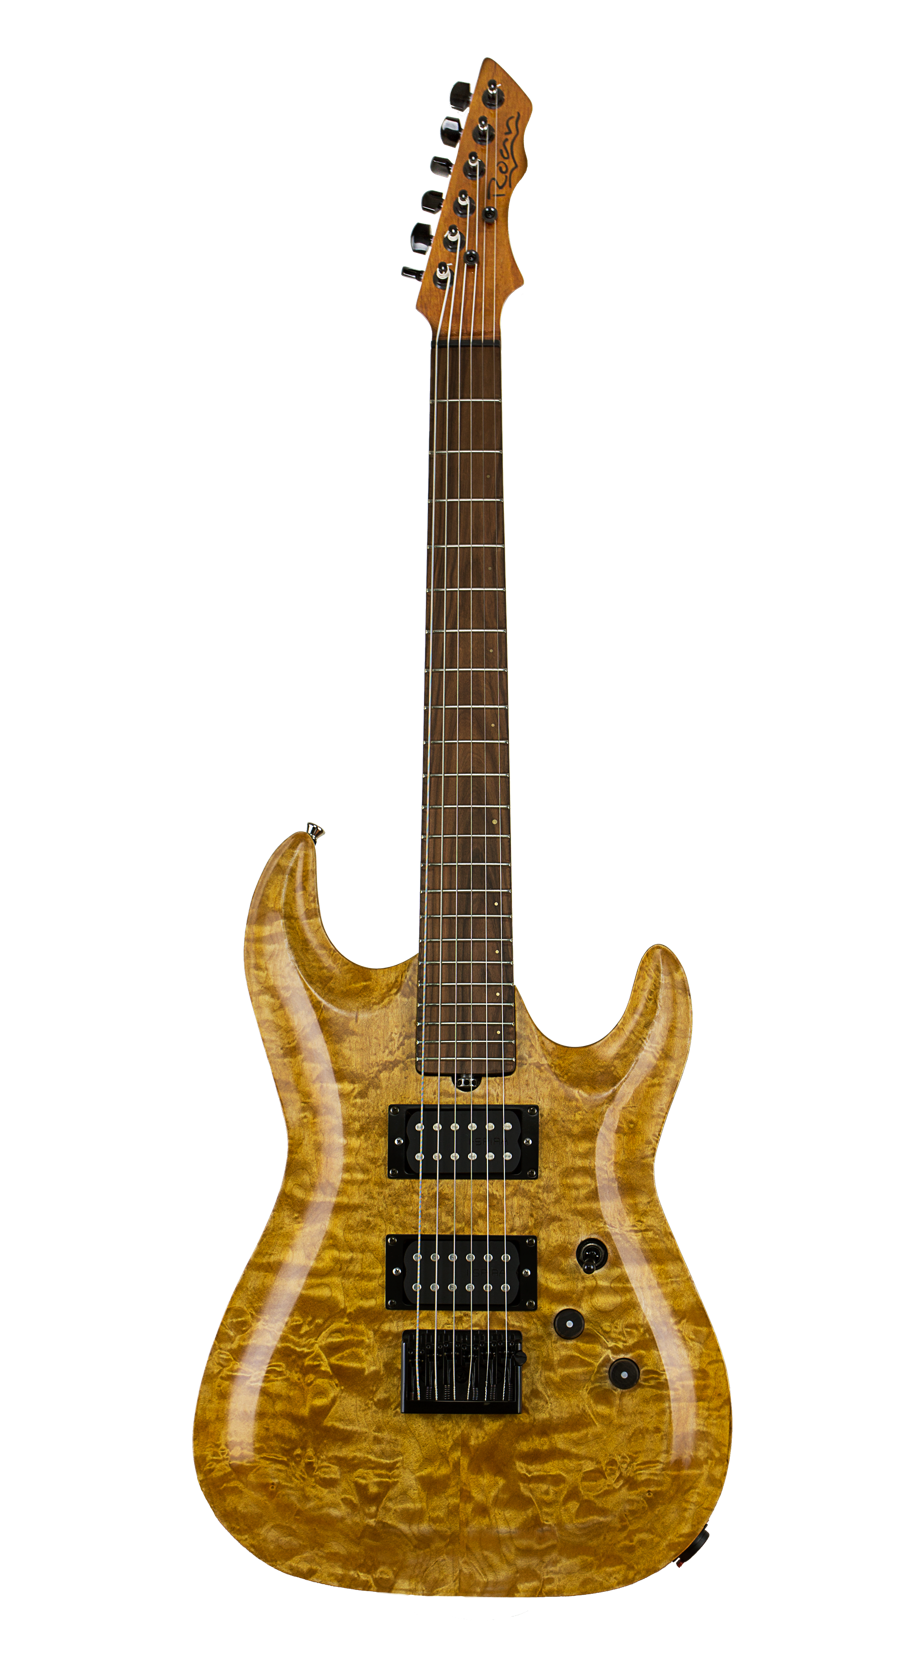 Pandora Evo guitar